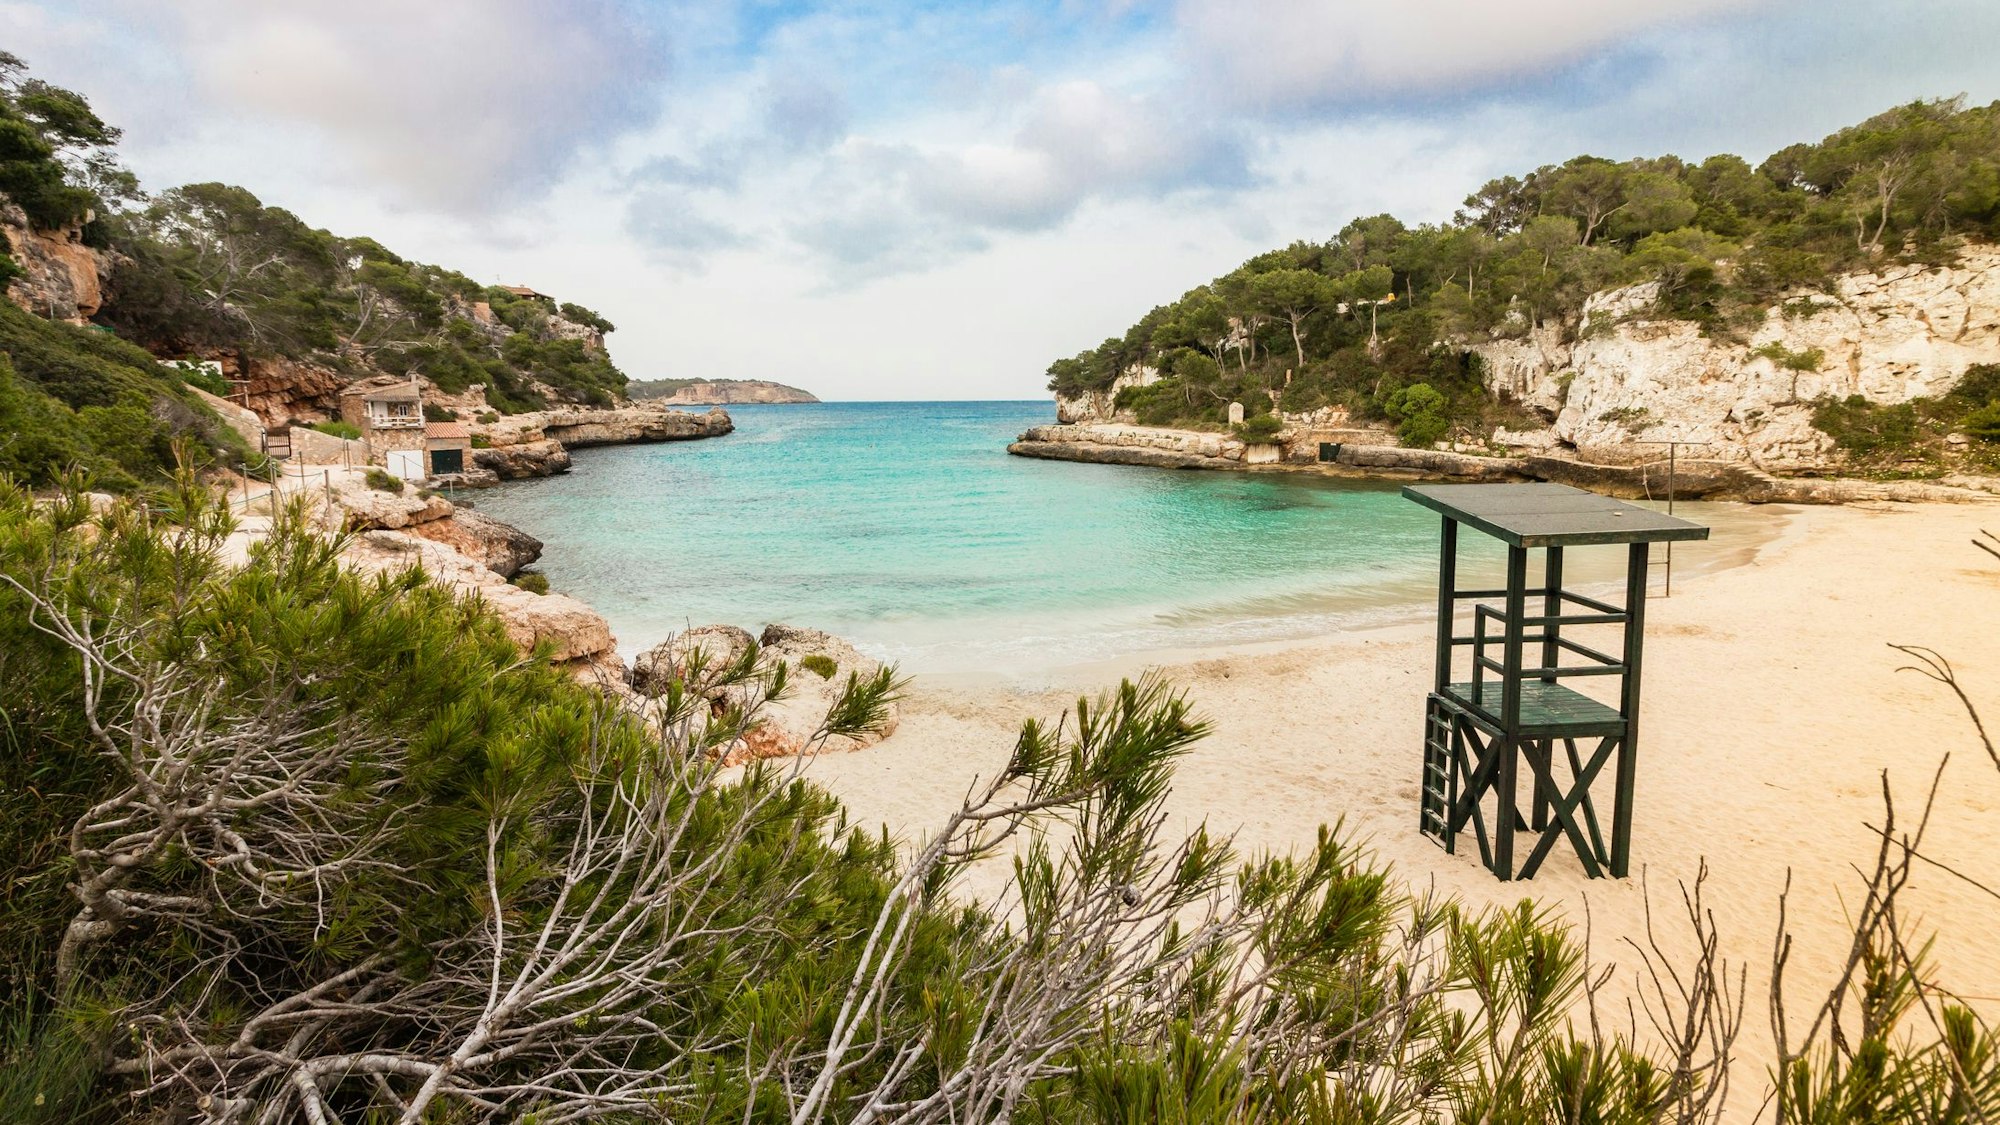 Strand von Cala Llombards, Mallorca.